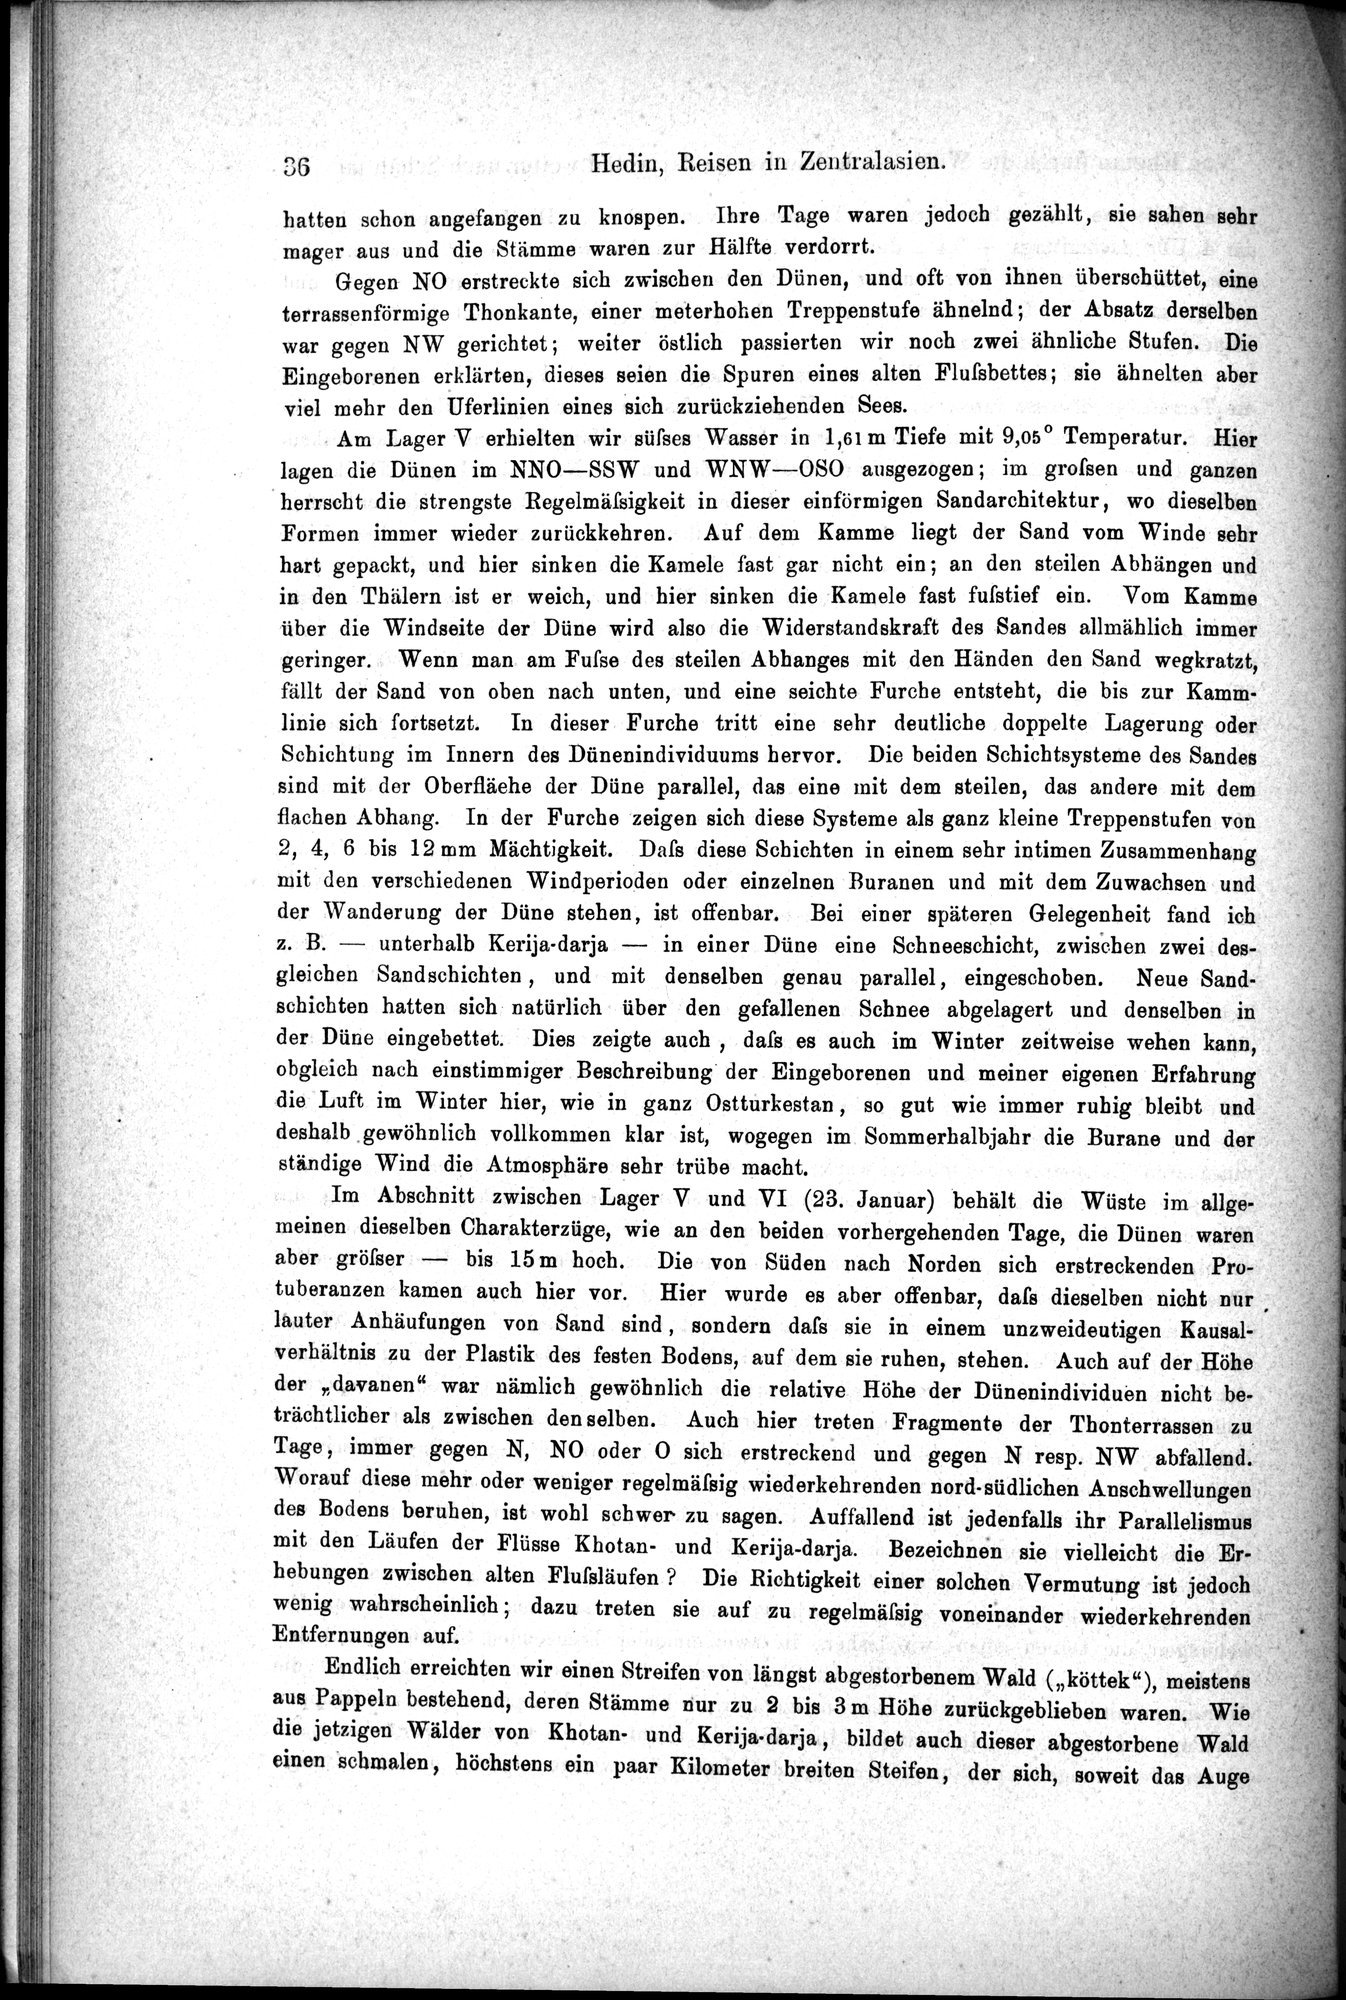 Die Geographische-Wissenschaftlichen Ergebnisse meiner Reisen in Zentralasien, 1894-1897 : vol.1 / Page 48 (Grayscale High Resolution Image)